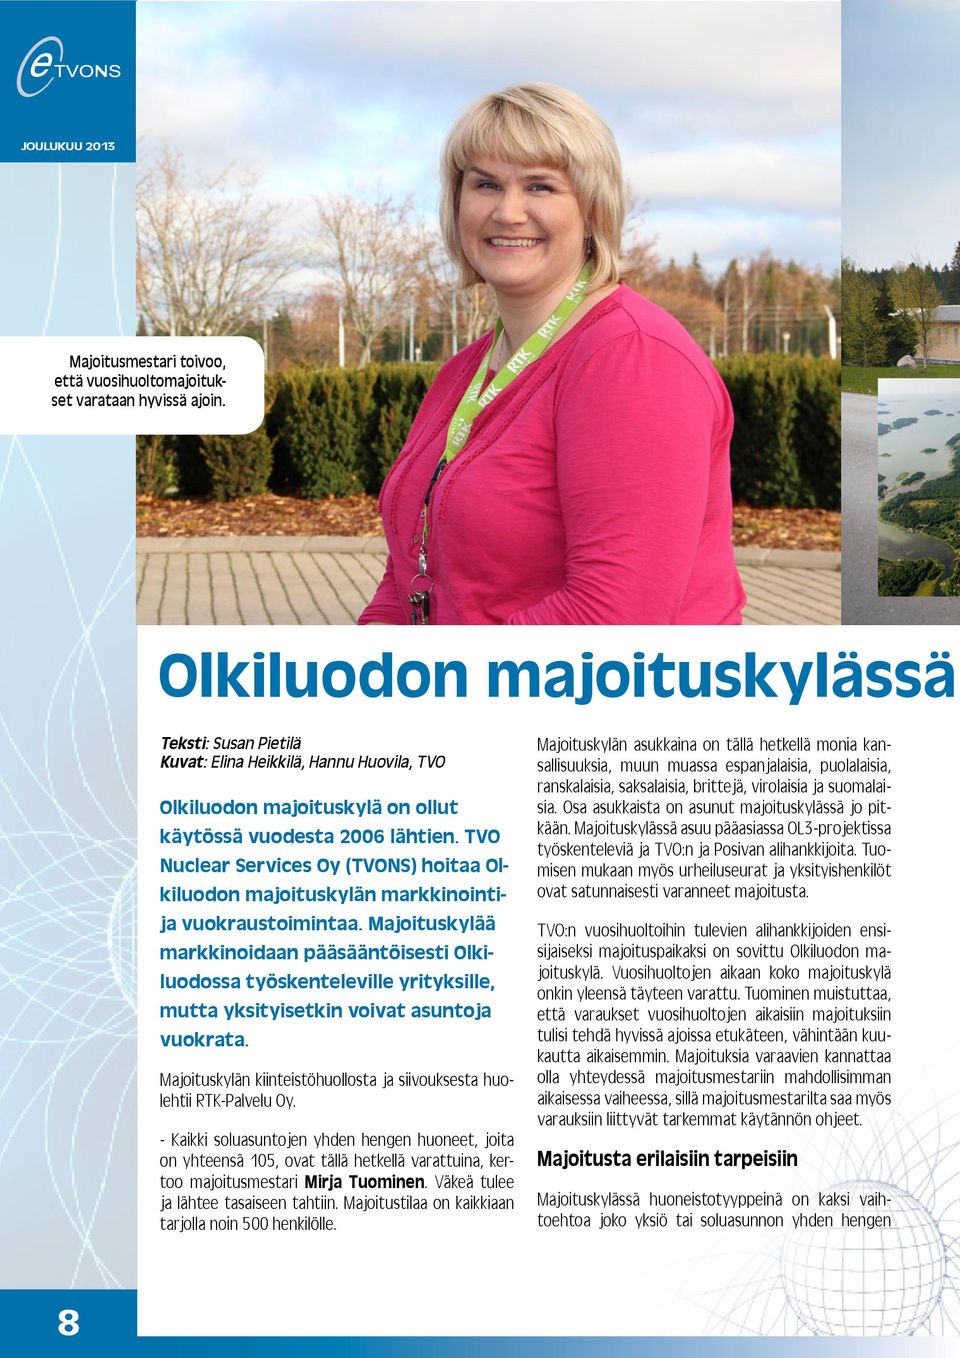 TVO Nuclear Services Oy (TVONS) hoitaa Olkiluodon majoituskylän markkinointija vuokraustoimintaa.